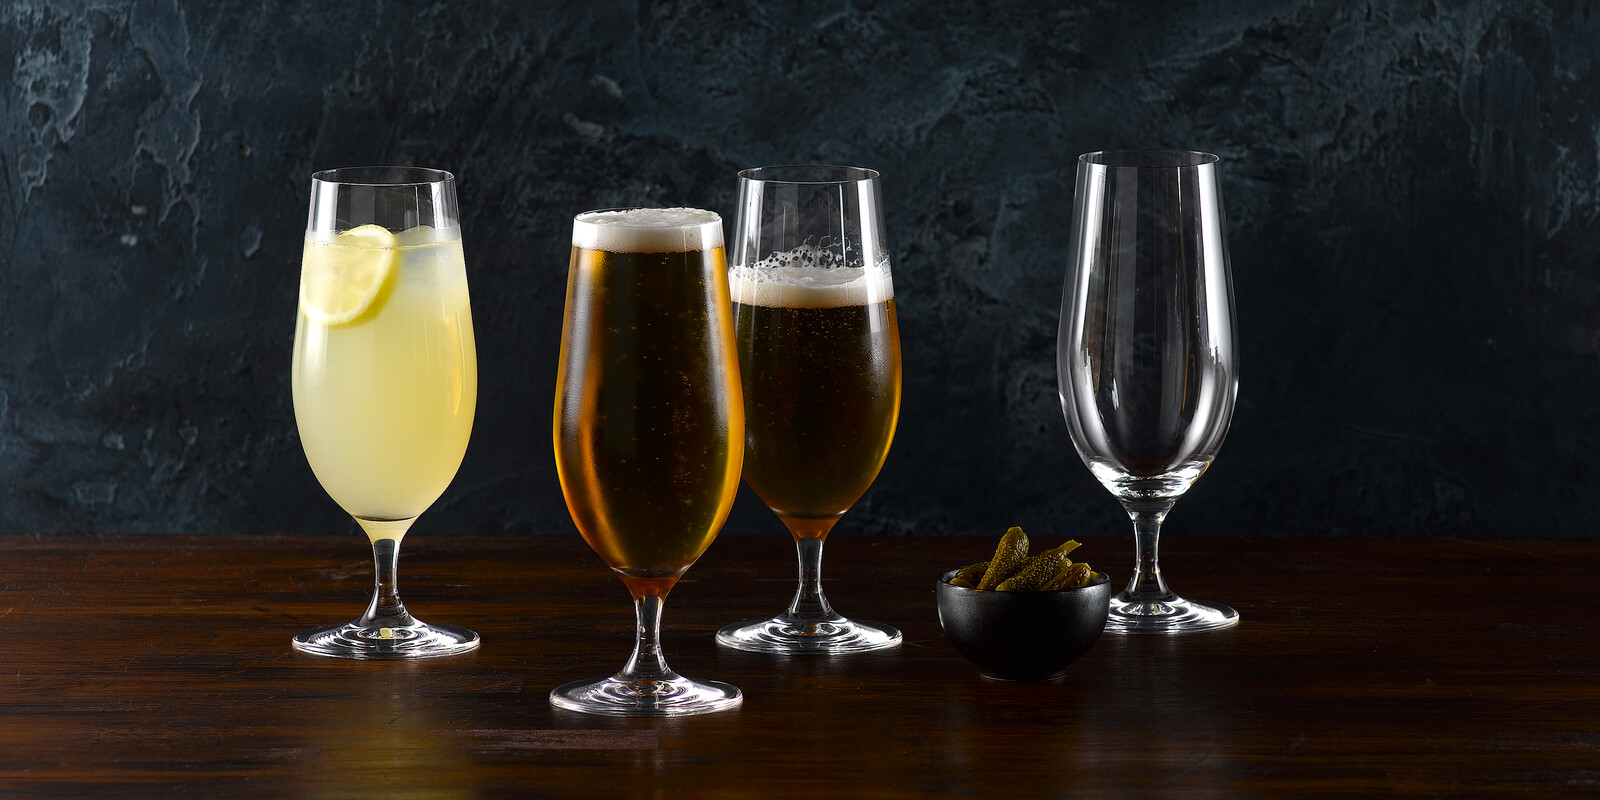 Barware, WaterfordCrystal, MarquisMoments, BeerGlass, CiderGlass